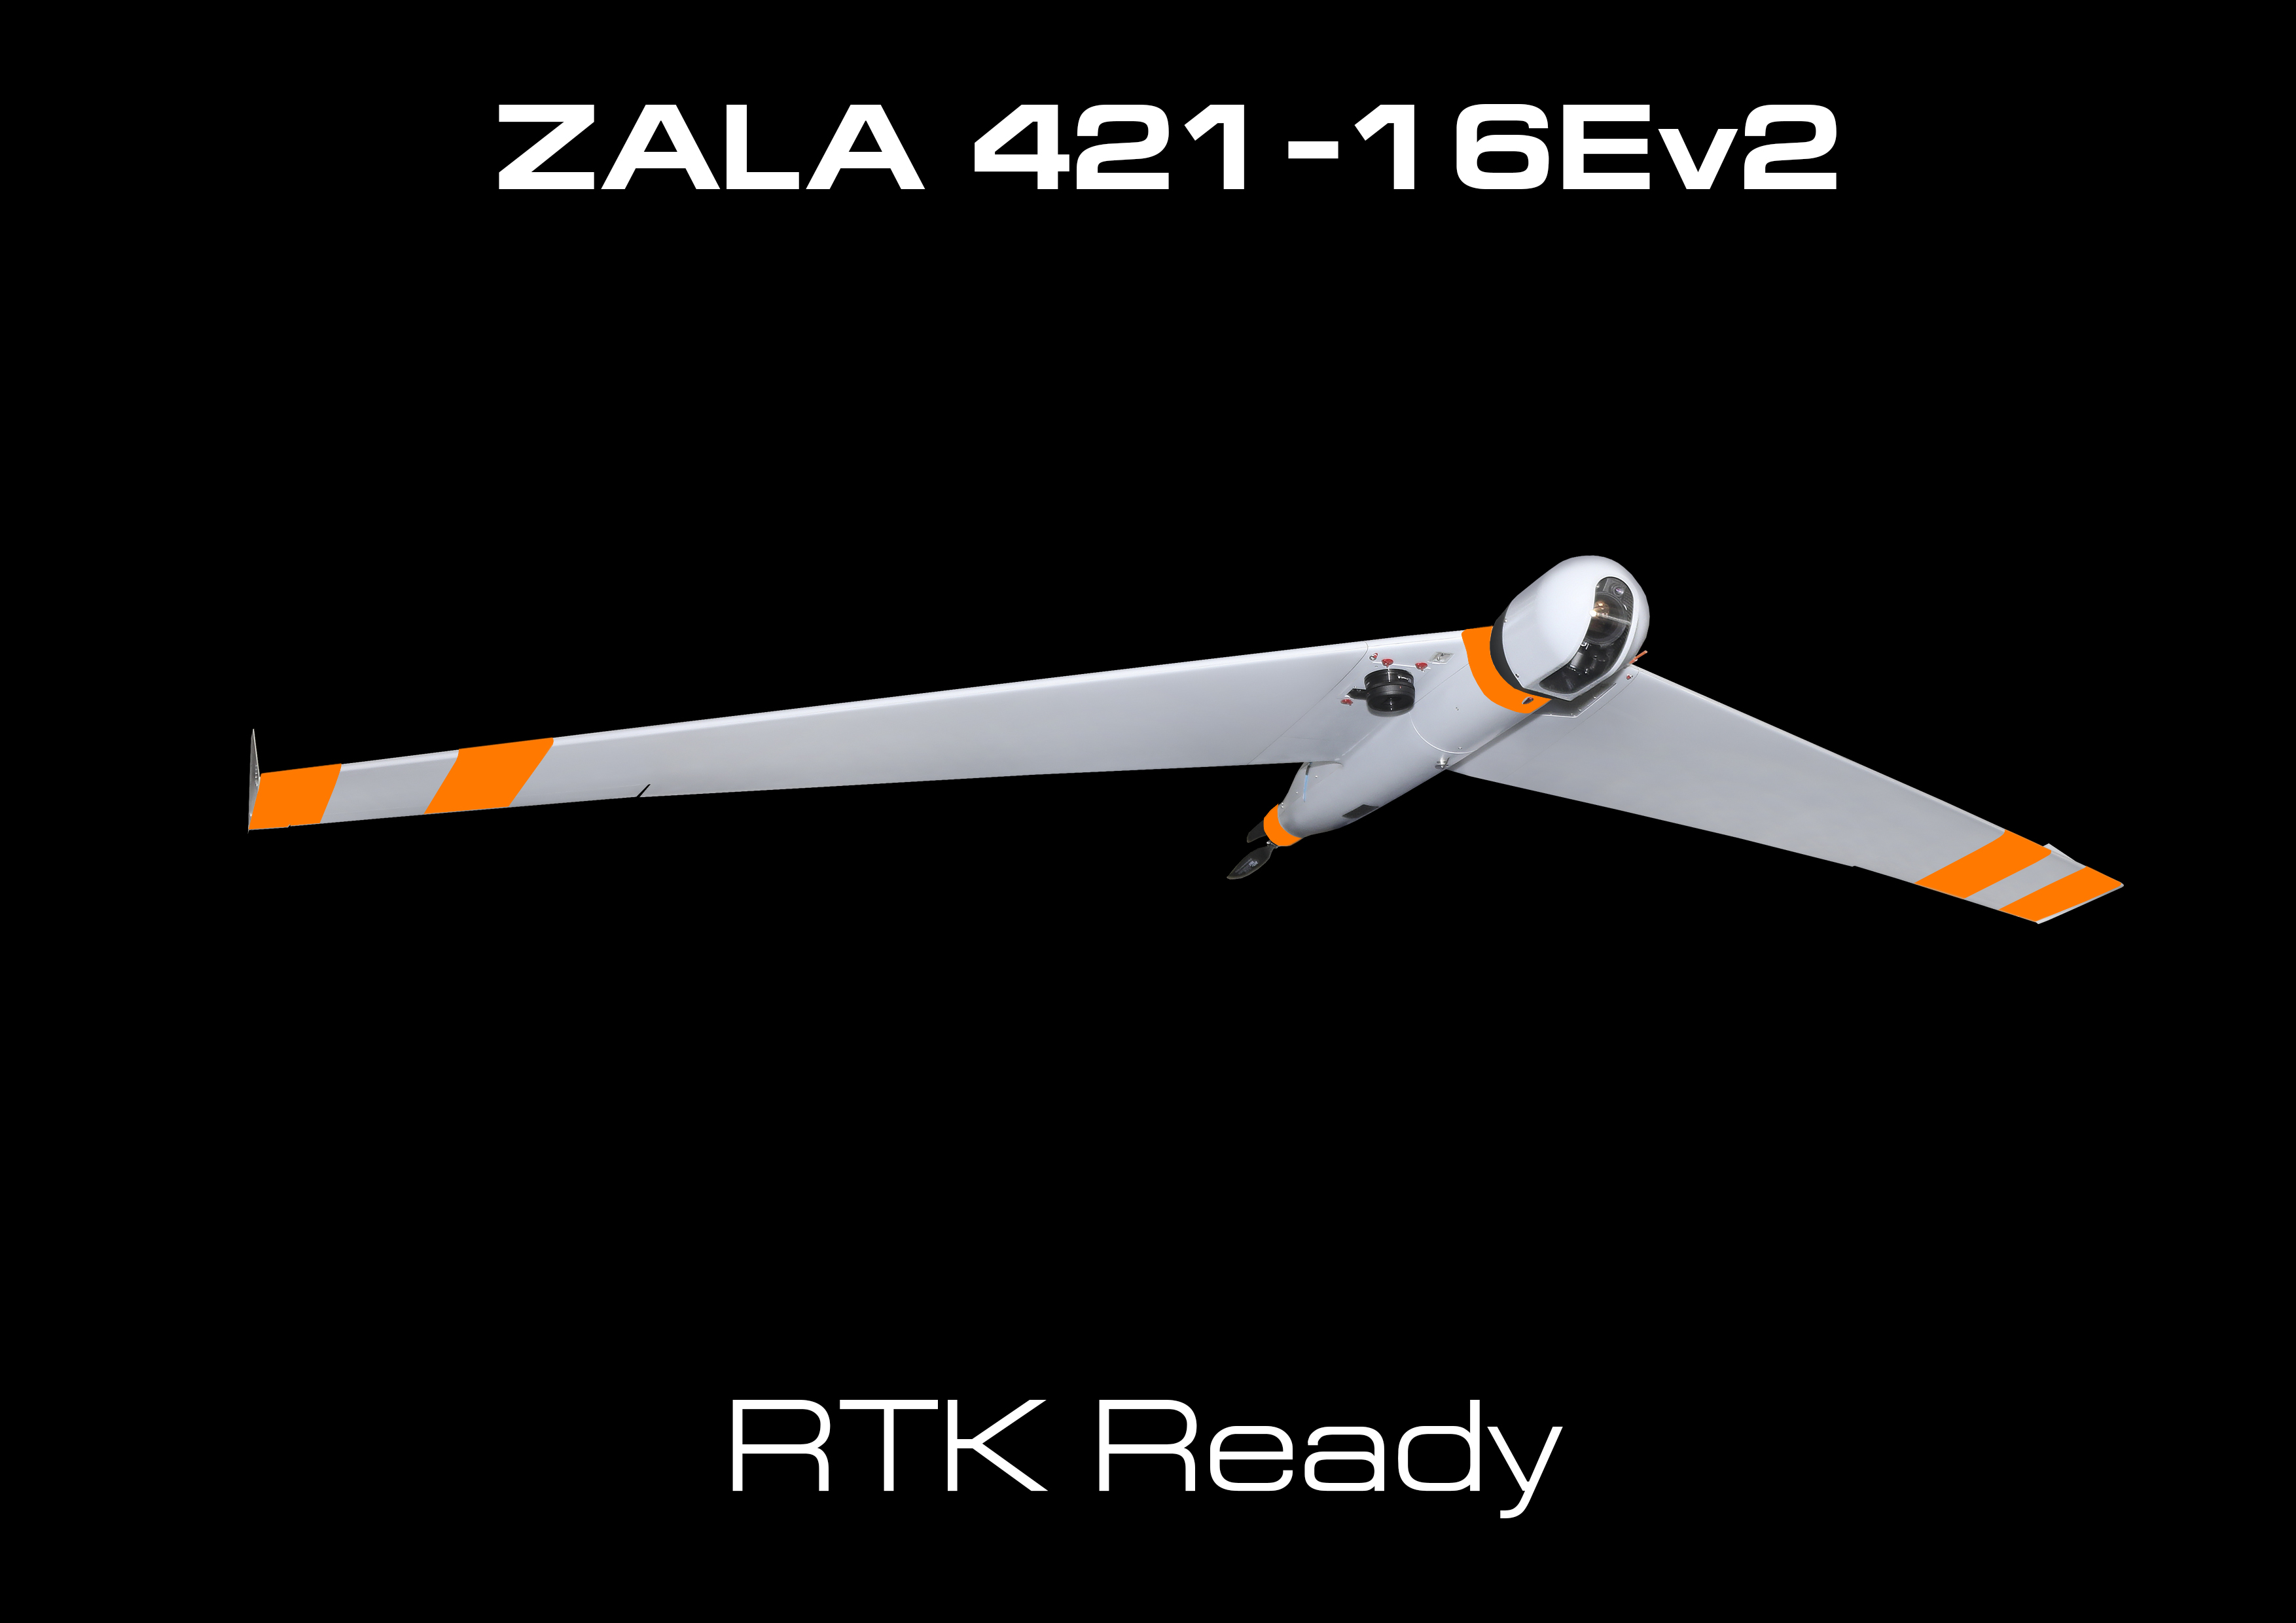 ZALA AERO продемонстрировала новый серийный беспилотник